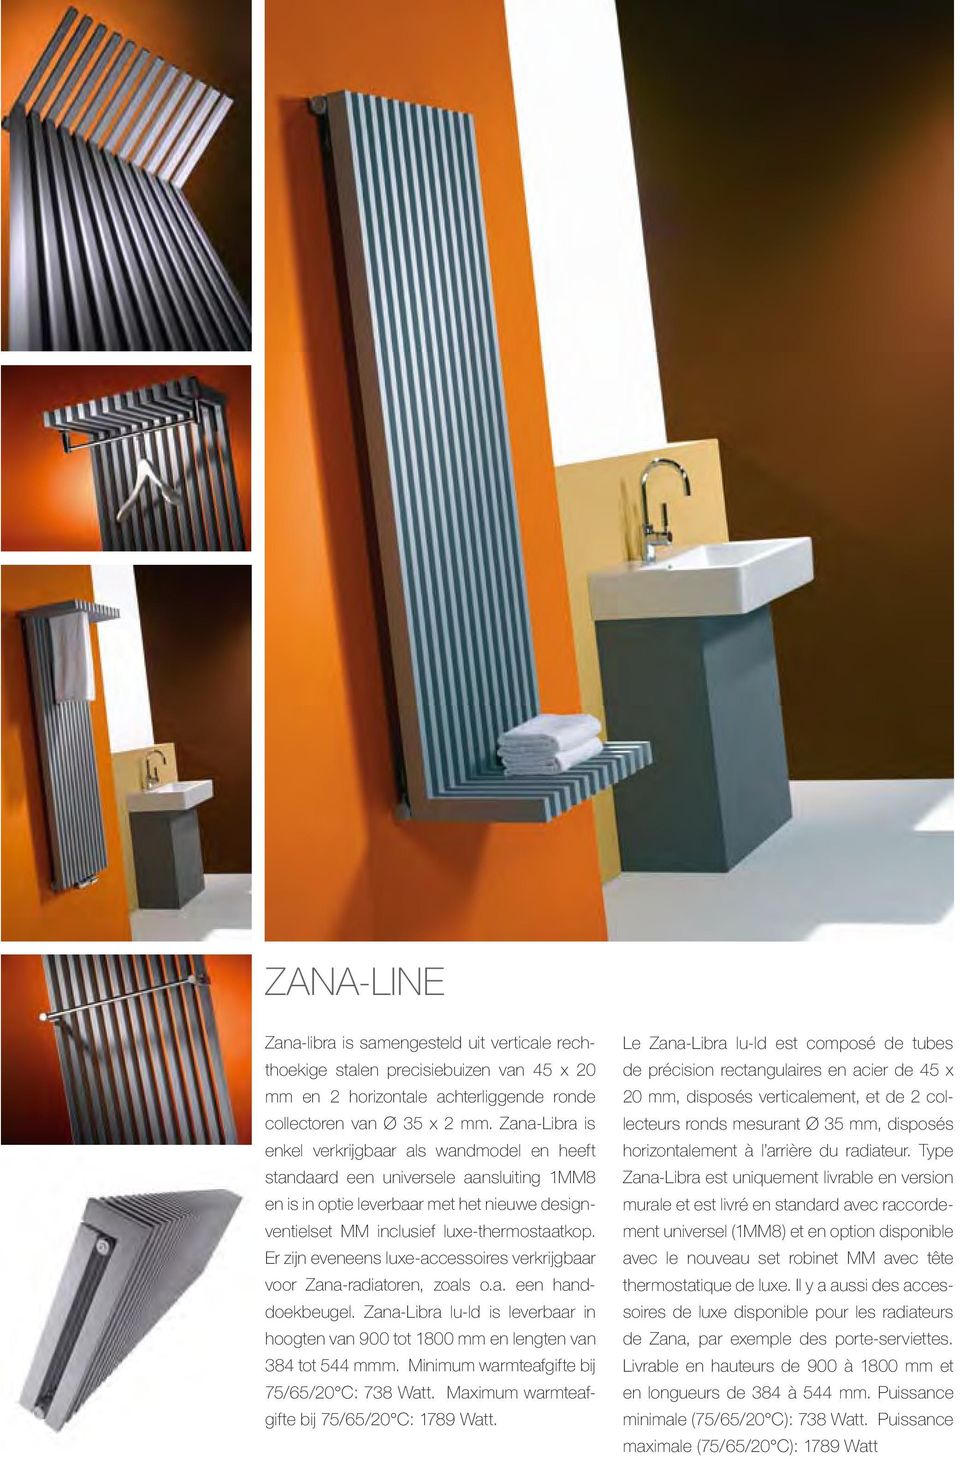 Er zijn eveneens luxe-accessoires verkrijgbaar voor Zana-radiatoren, zoals o.a. een handdoekbeugel. Zana-Libra lu-ld is leverbaar in hoogten van 900 tot 1800 mm en lengten van 384 tot 544 mmm.